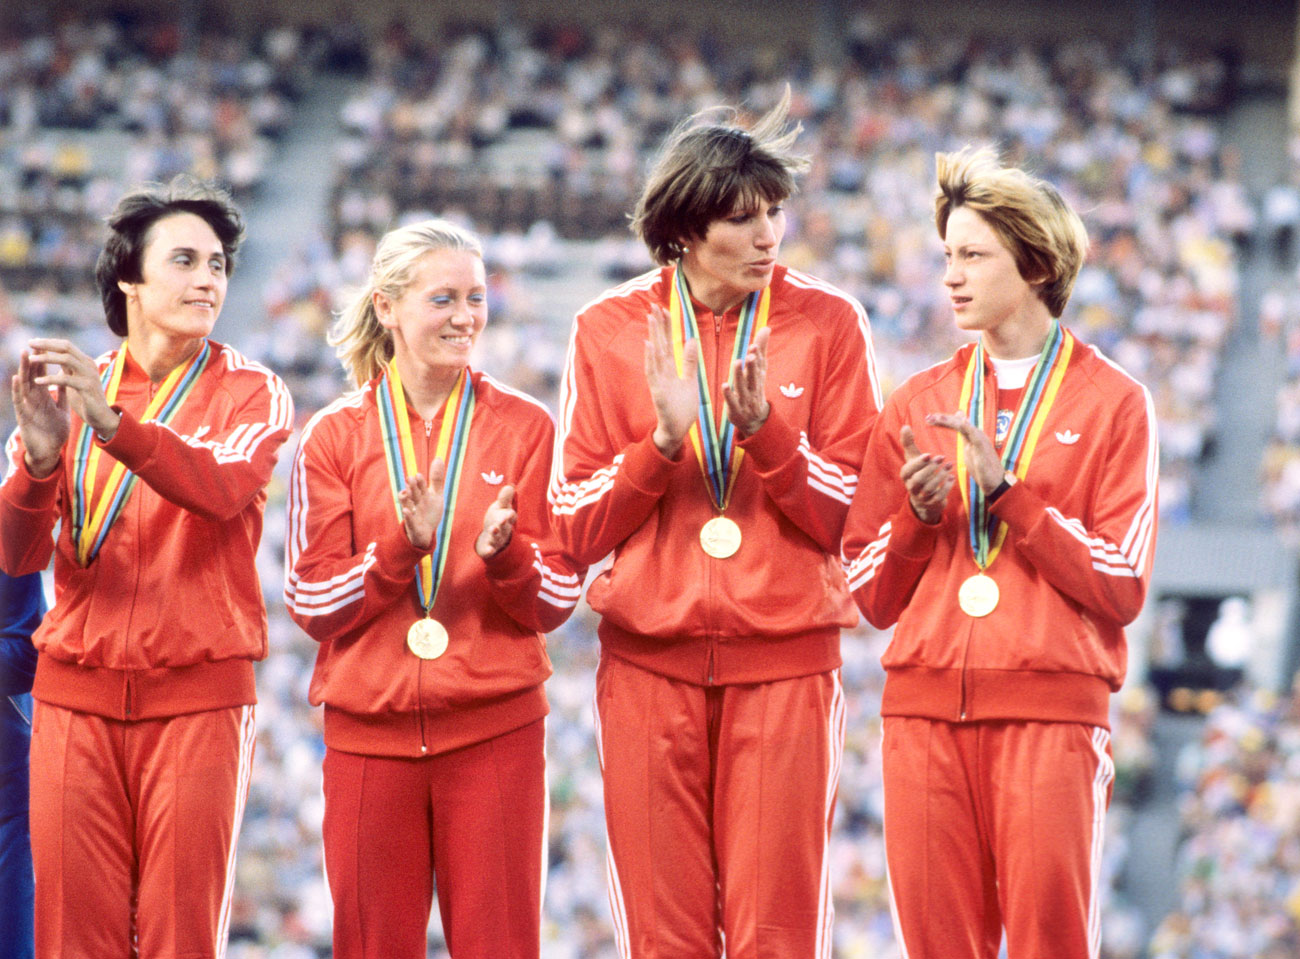 1980 МОСКВАДо 1980 г. екипите на спортистите се моделират от Общосъюзната къща на моделите в Москва, а до 1988 г. се шият в Армения. Домакинският екип за Олимпиадата през 1980 г. обаче е изключение. За първи път в историята западна компания – „Адидас“ (Adidas), създава екипа за съветския отбор. Той се откроява със своята простота, липса на надписи и допълнителни детайли. Официалните костюми на националния отбор е със златист оттенък. На Олимпиадата в Москва през 1980 г. съветските спортисти оглавяват класацията по спечелени медали с 80 златни отличия. Олимпиадата обаче е бойкотирана от спортистите от 65 държави, сред които САЩ, ФРГ, Япония, Турция и Южна Корея.